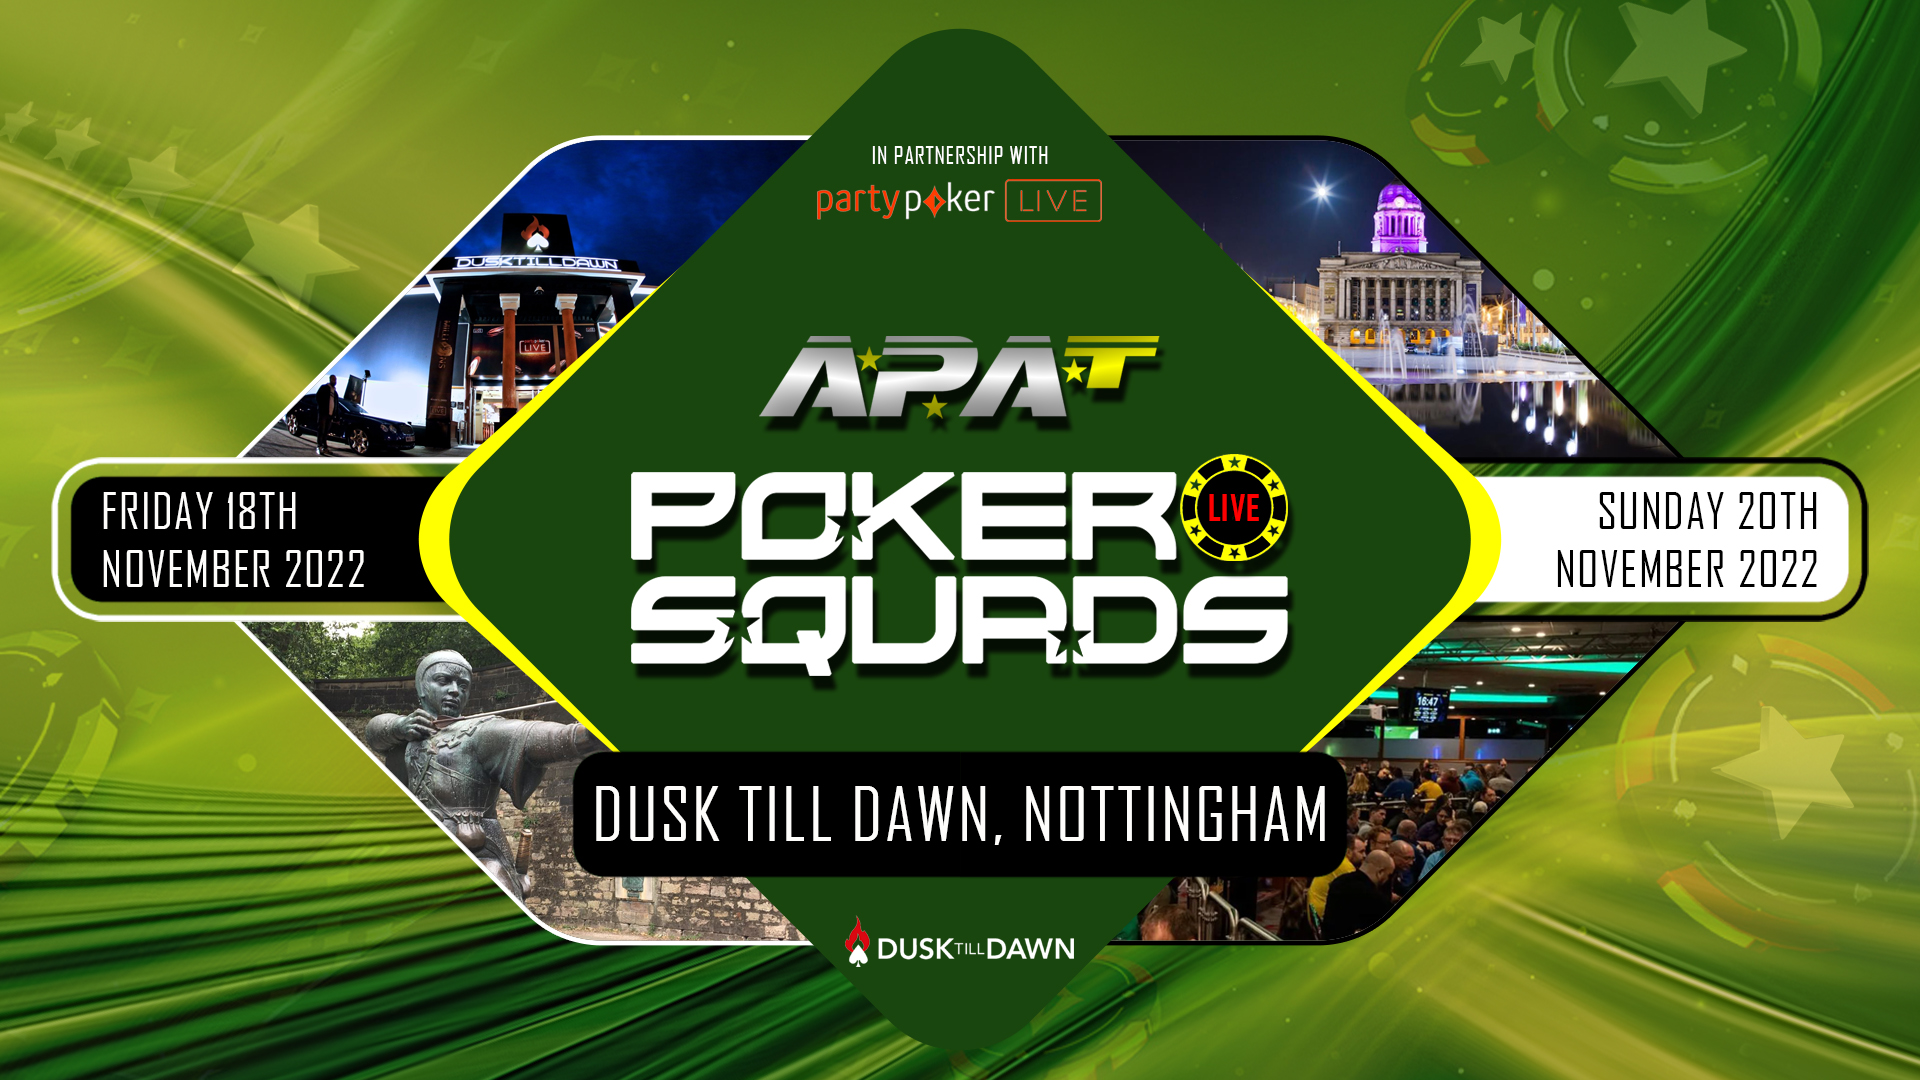 APAT Poker Squads Finer Details